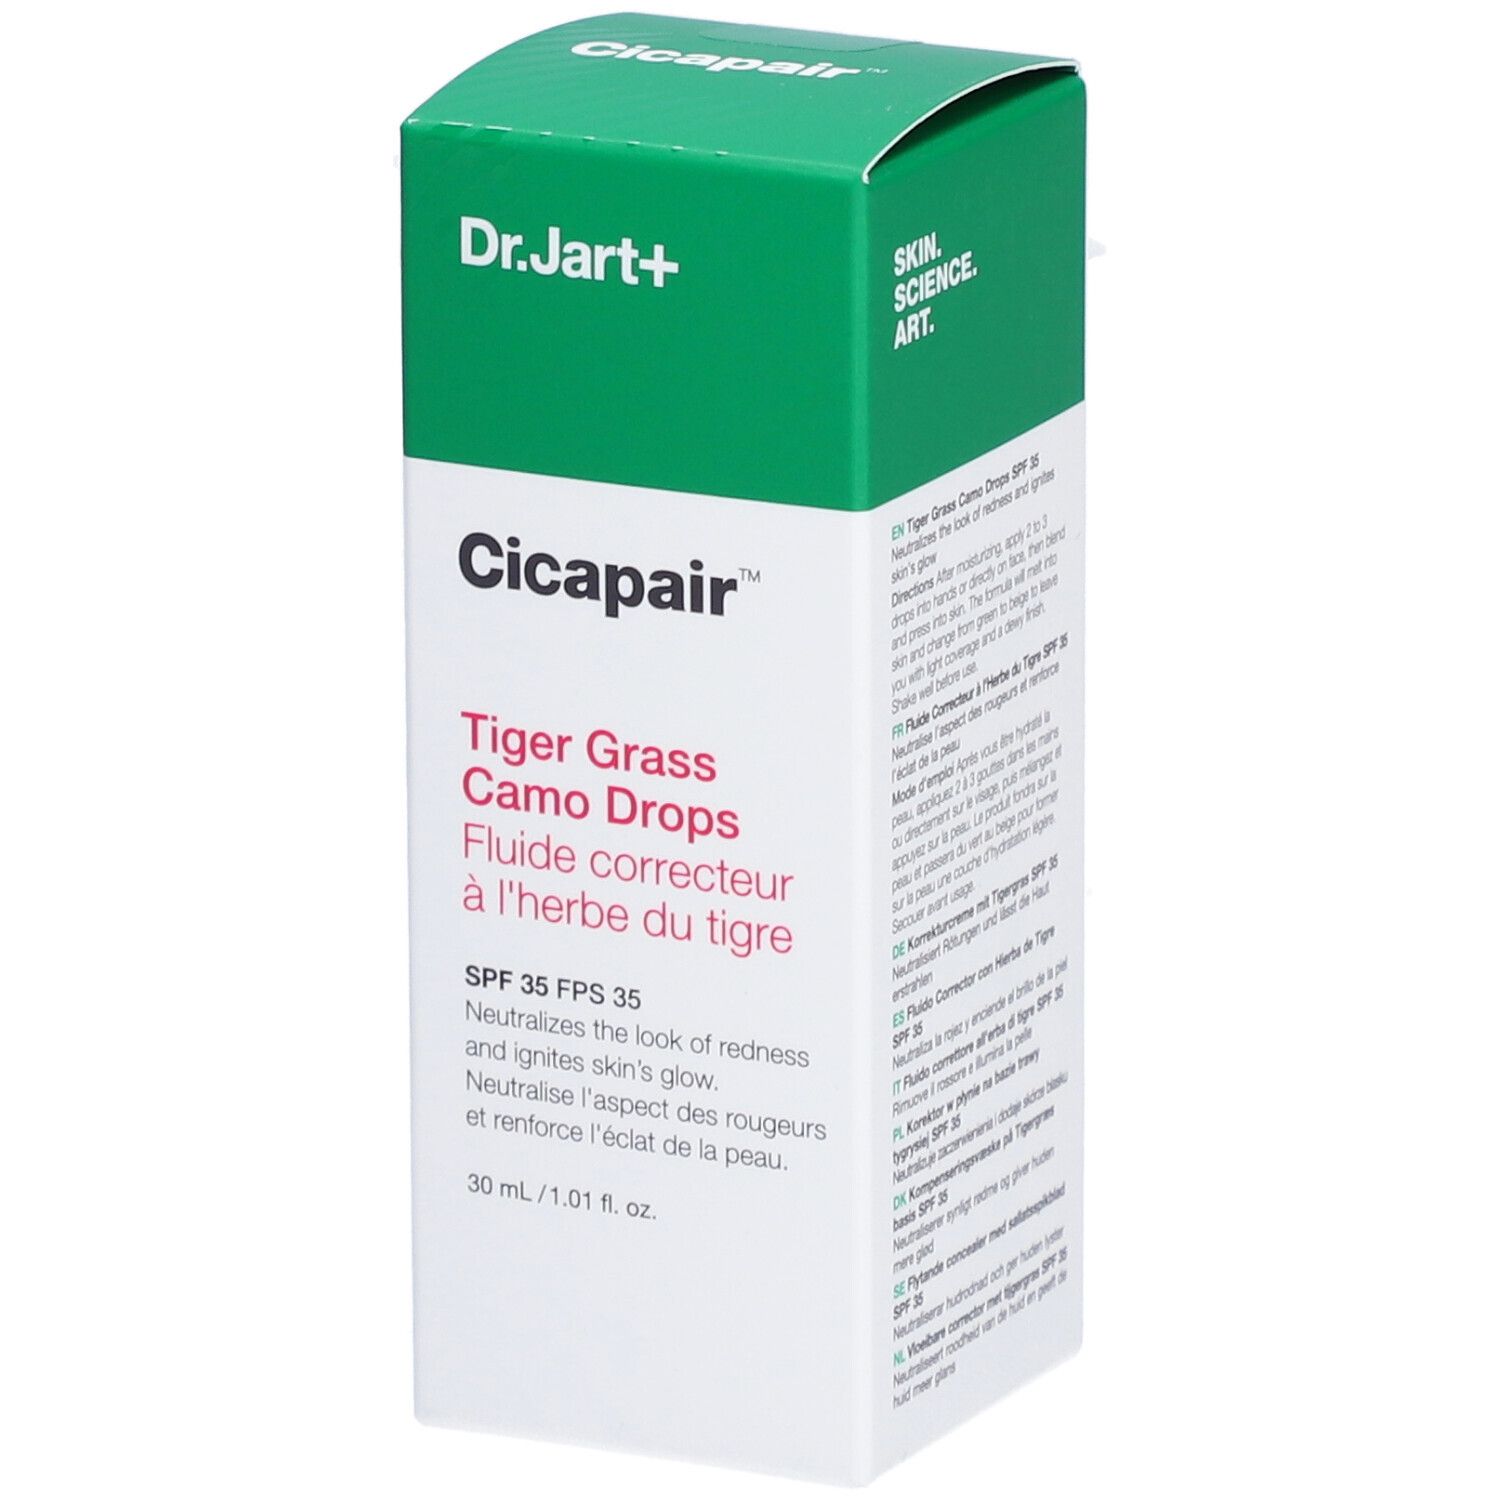 Dr.Jart+ Cicapair Tiger Grass Camo Drops